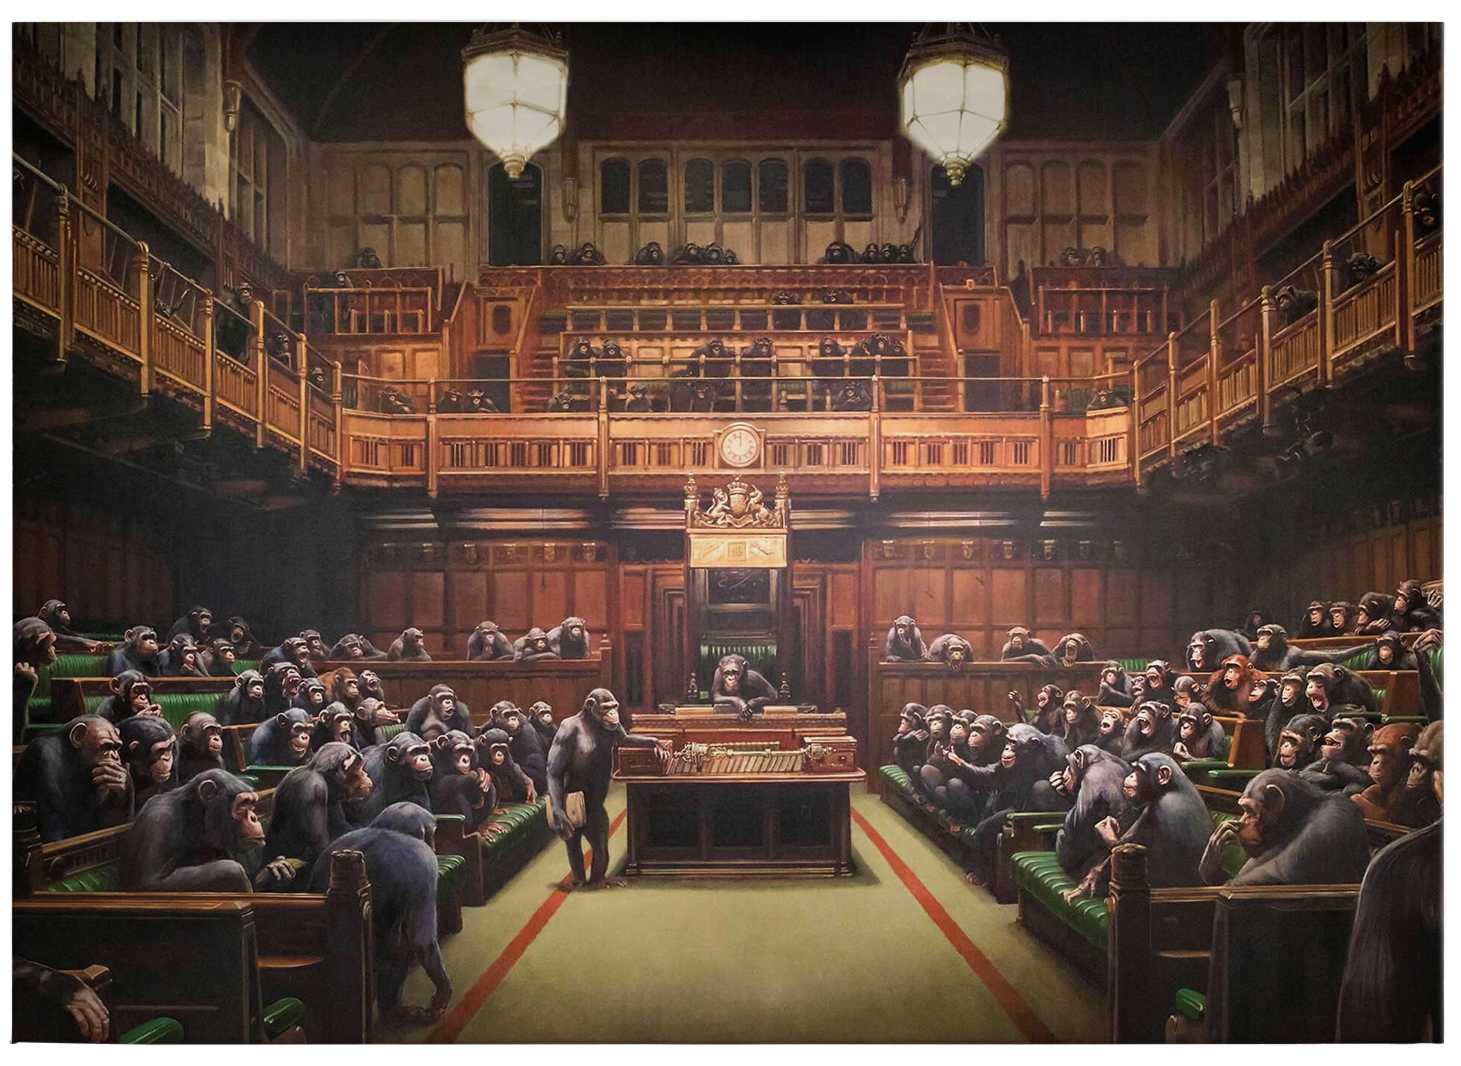             Tela Banksy "Devolved Parliament" - 0,70 m x 0,50 m
        